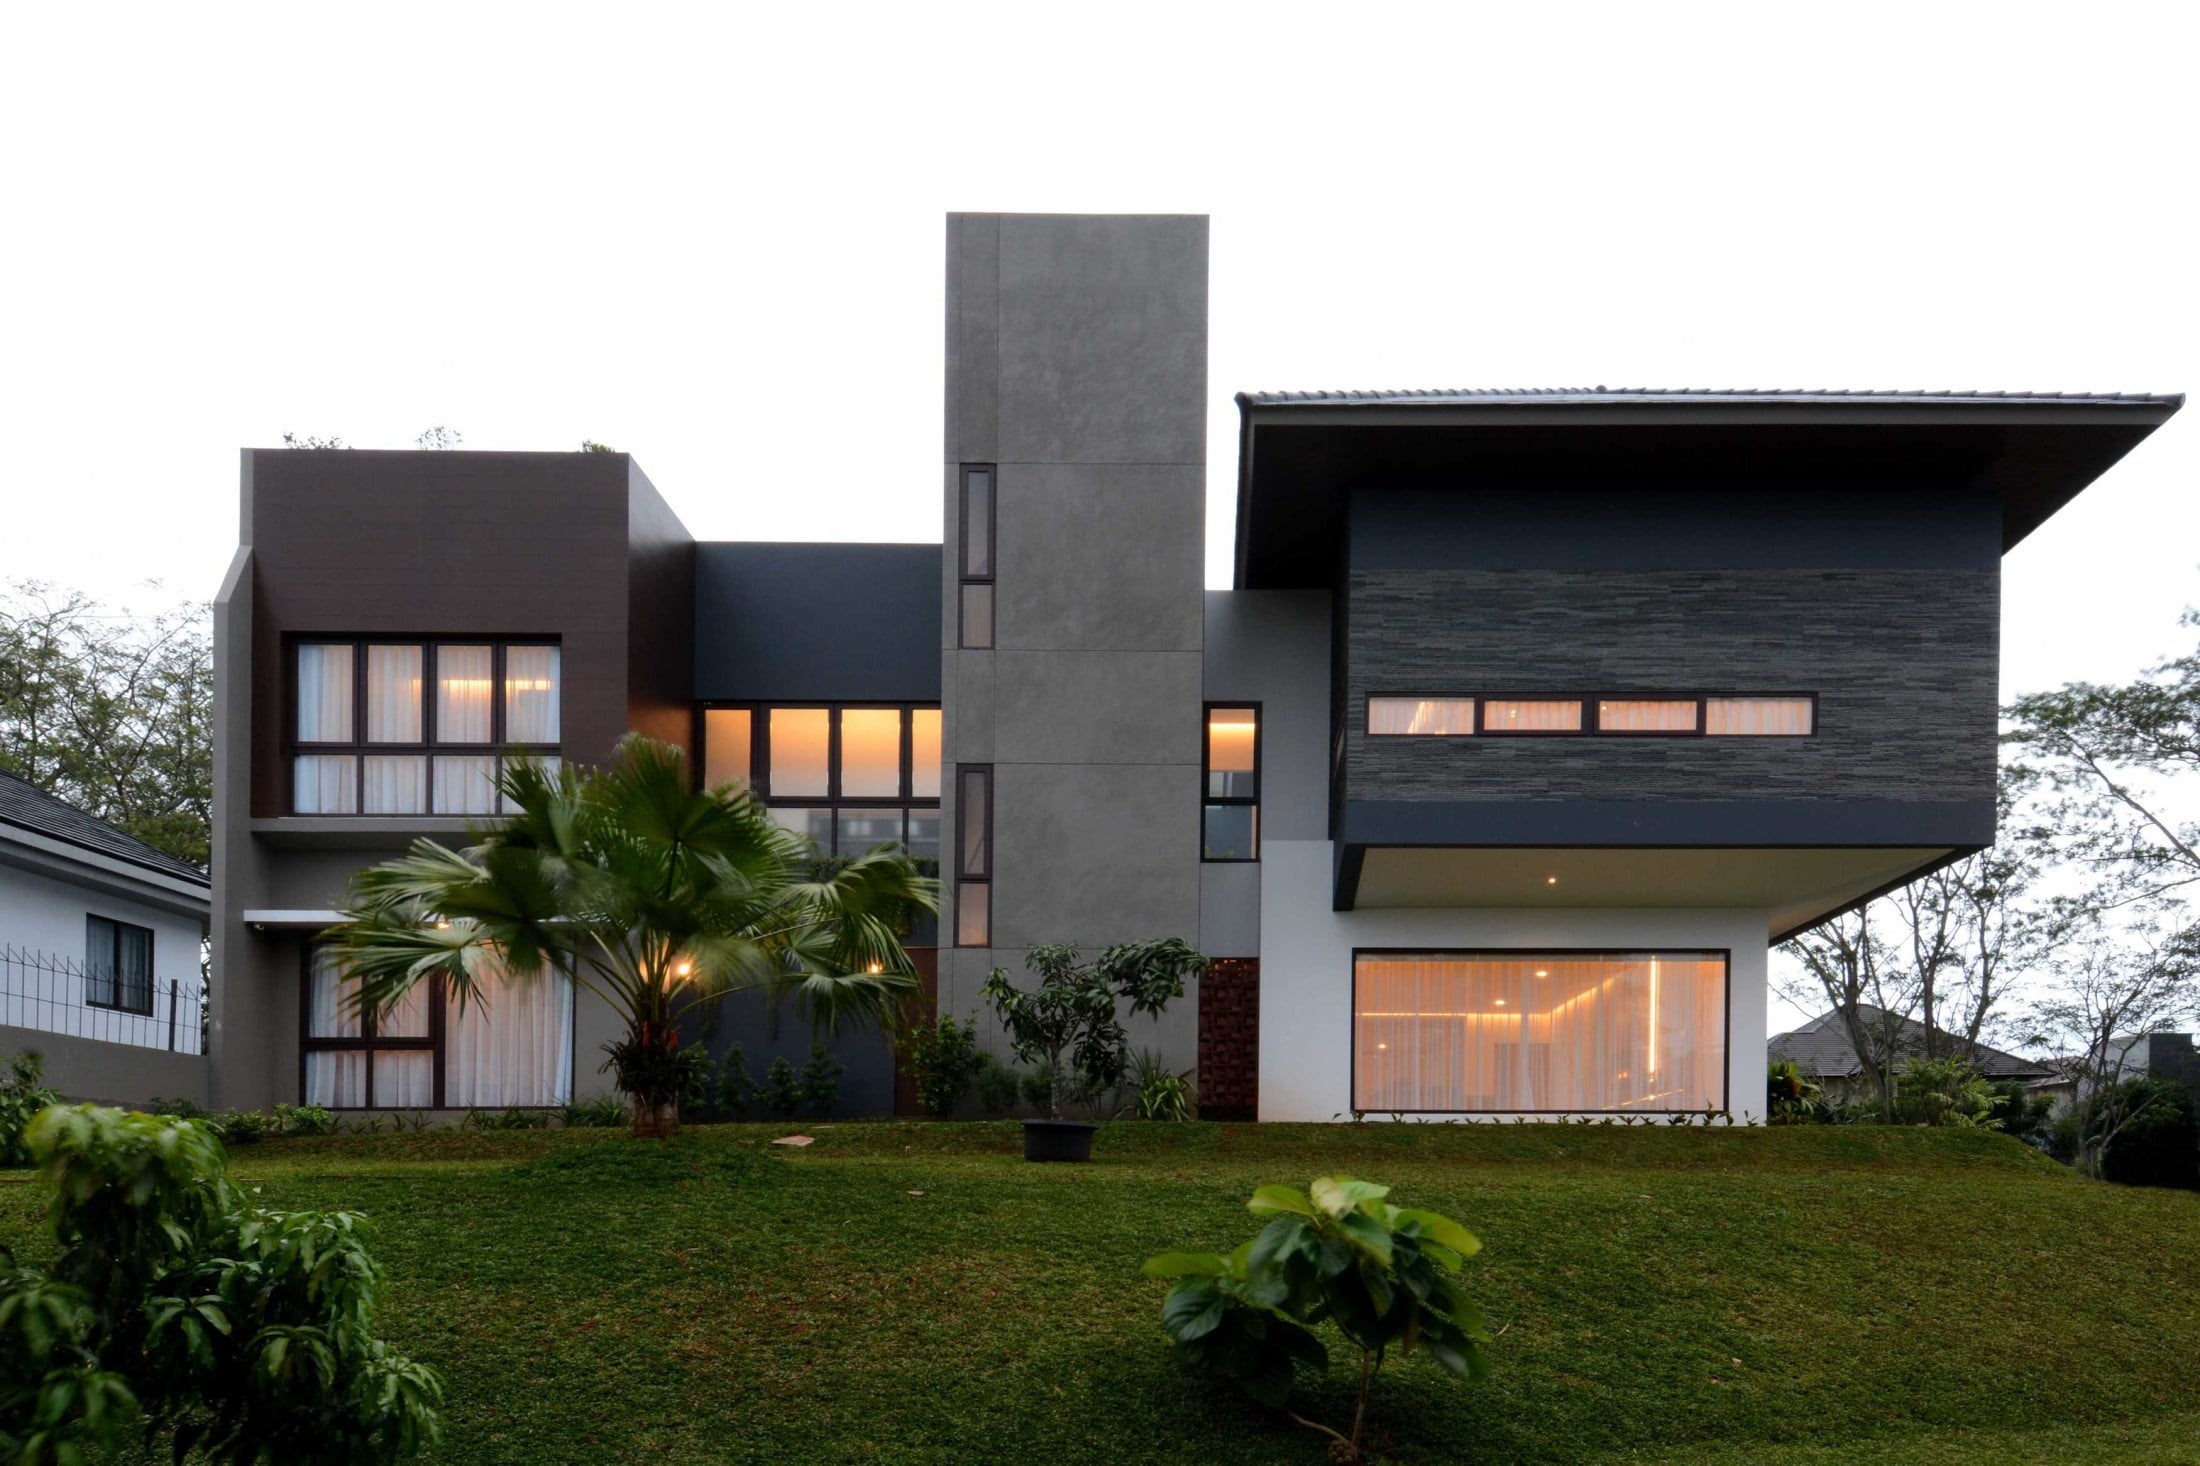 Desain Rumah Eco Green : Bagi anda yang ingin membangun rumah tinggal ...